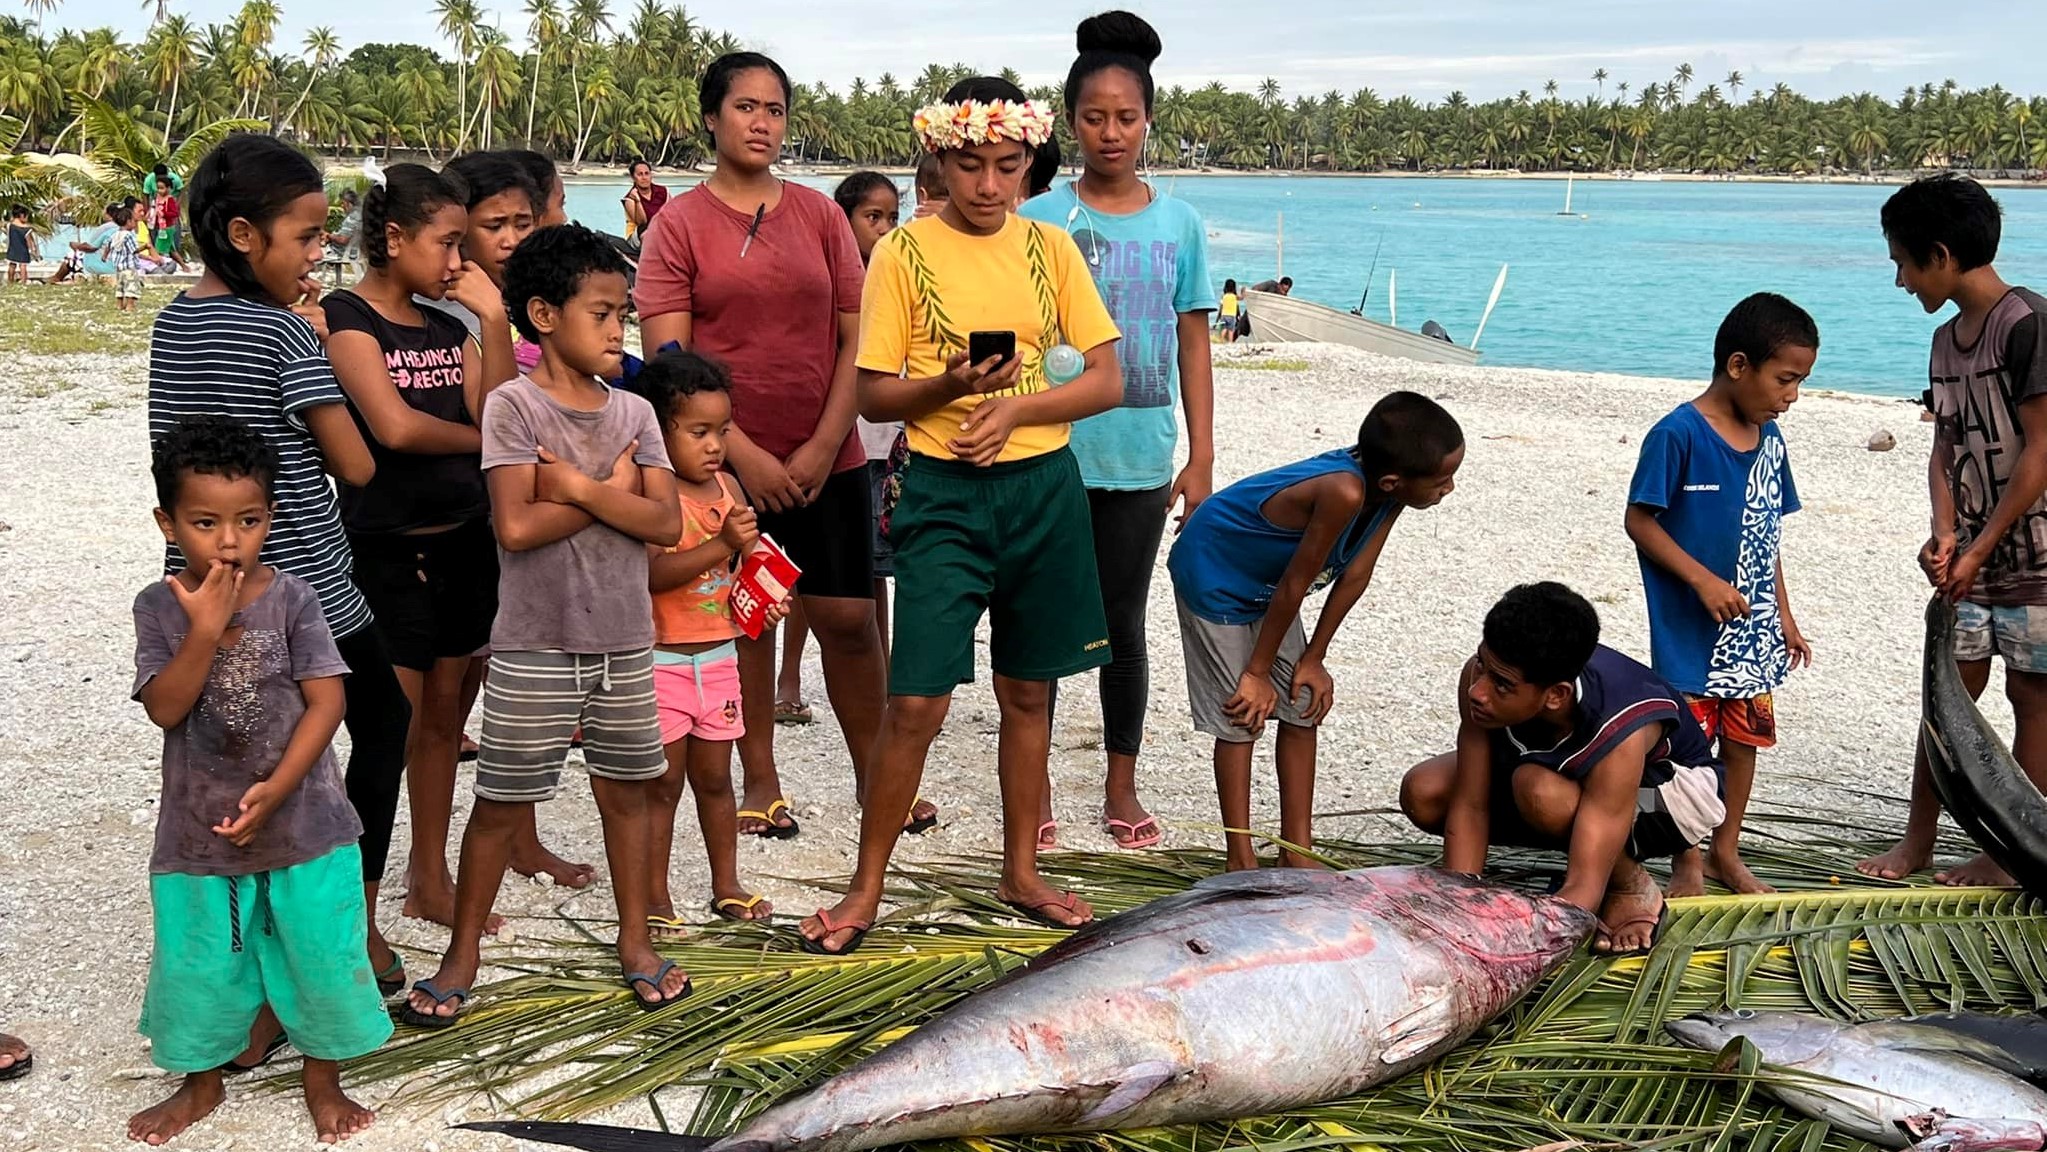 98 kilo Bluefin Tuna ‘a rare catch’